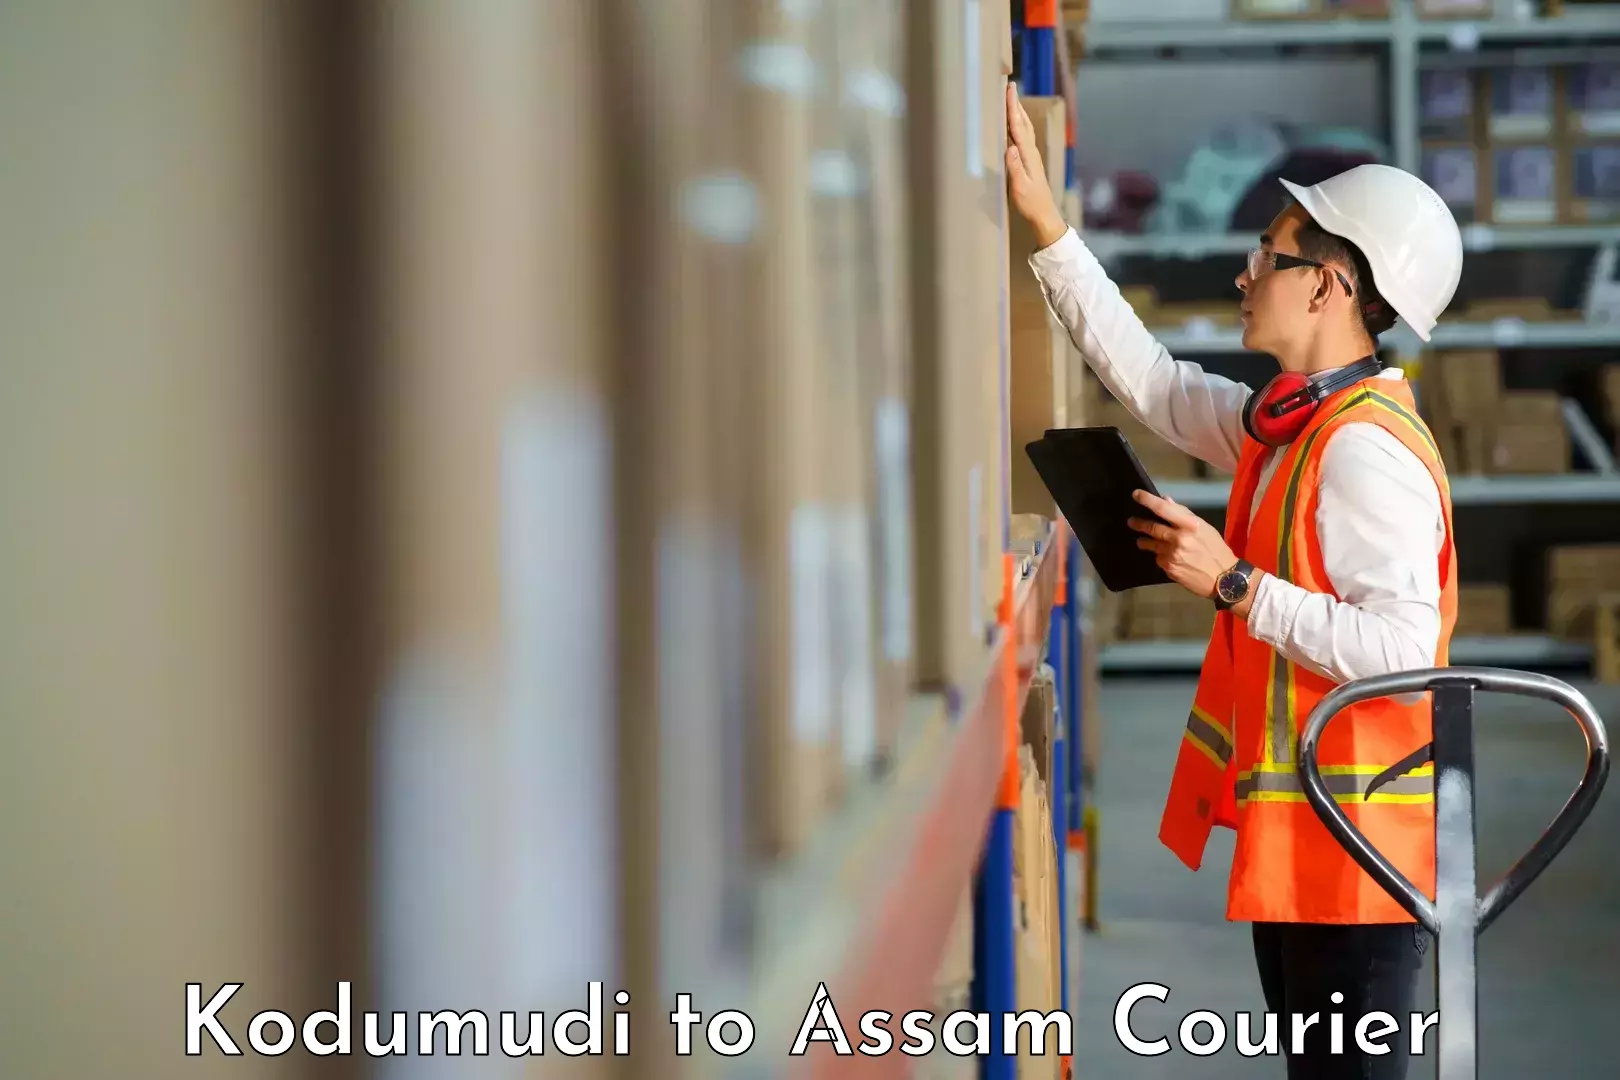 Professional courier services Kodumudi to Rangia